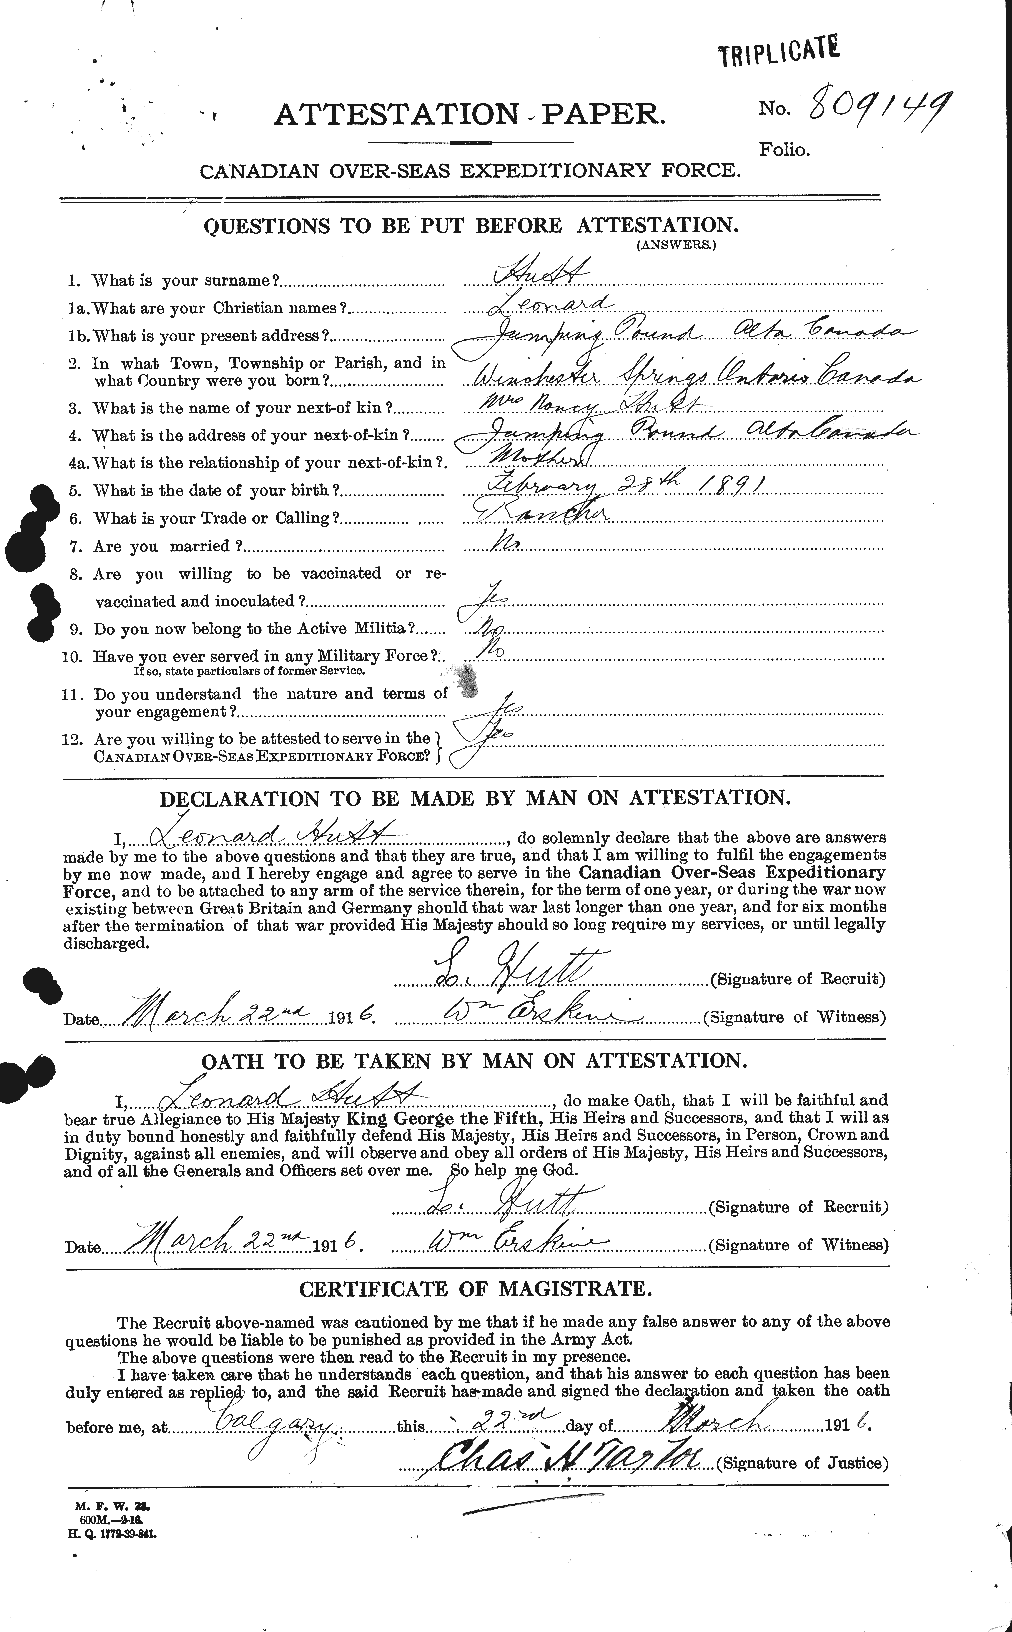 Dossiers du Personnel de la Première Guerre mondiale - CEC 411947a